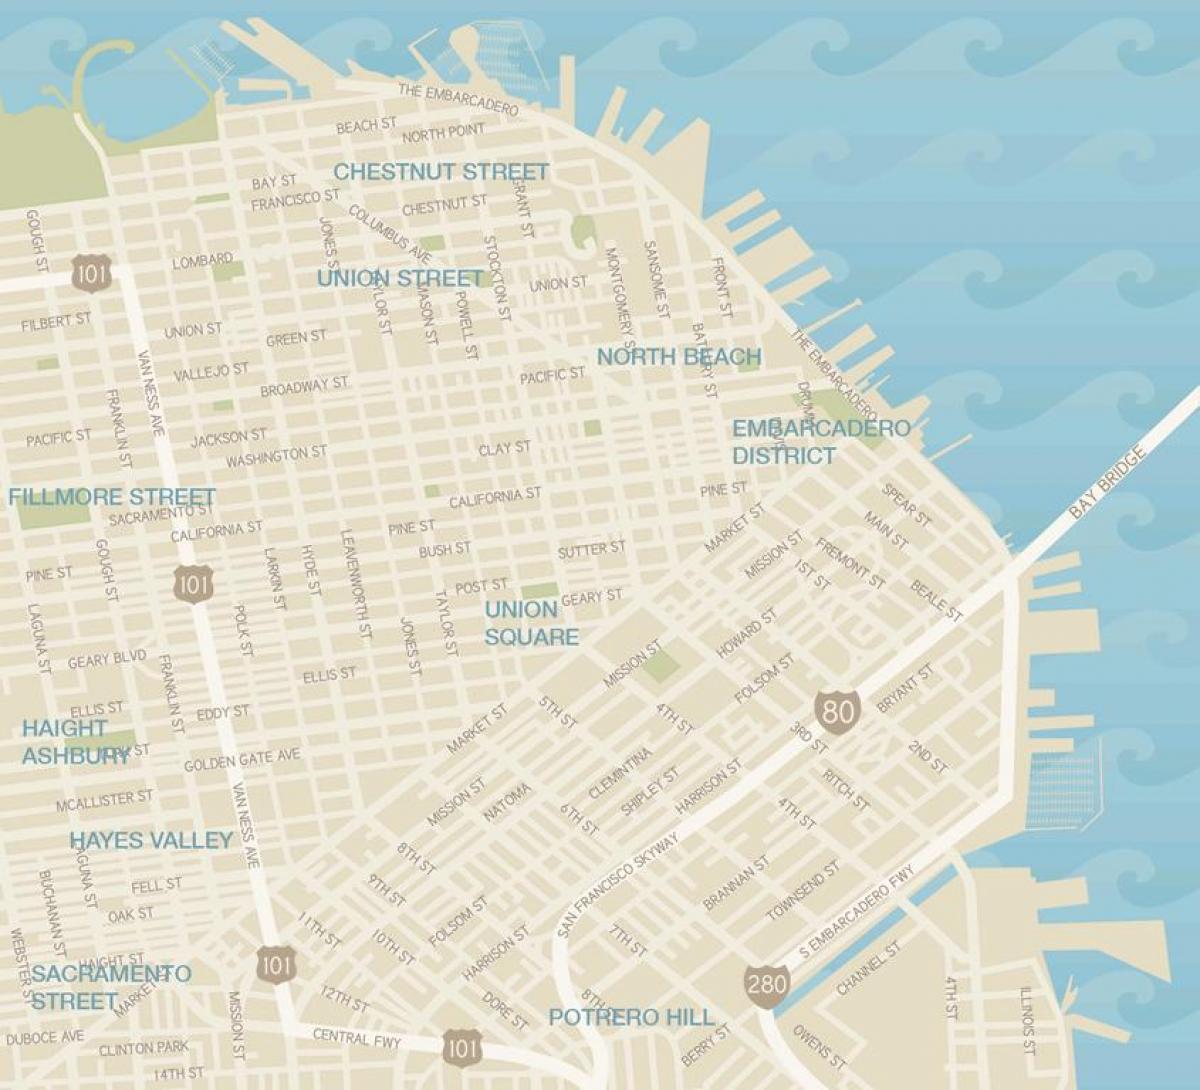 Zemljevid San Francisco oblačilo okrožno